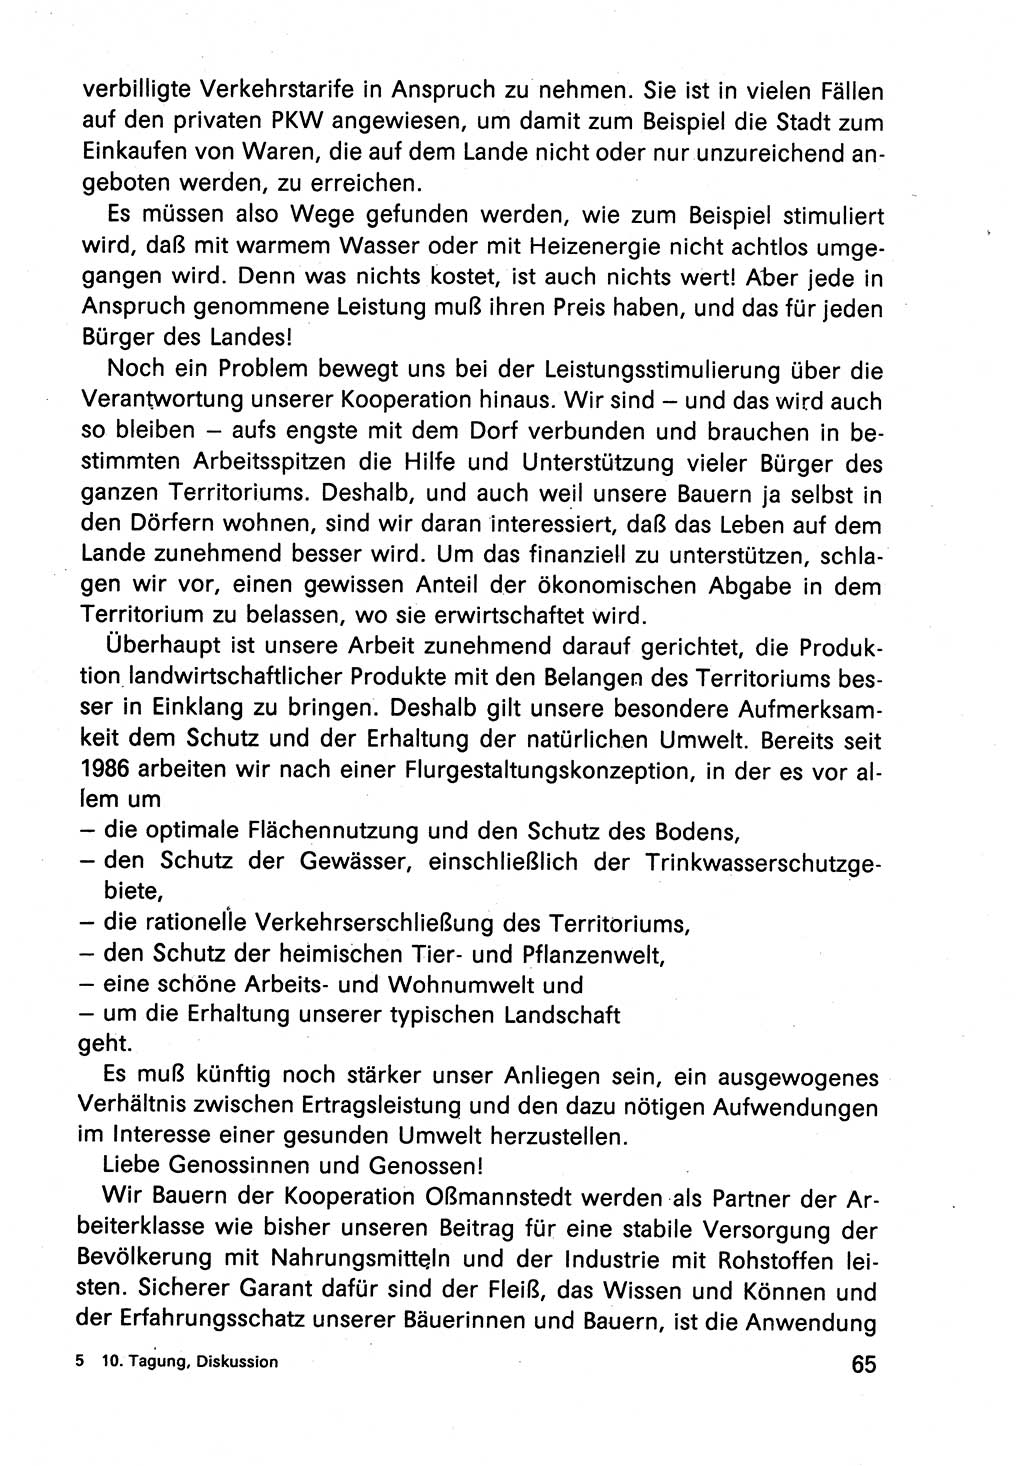 Diskussionsbeiträge, 10. Tagung des ZK (Zentralkomitee) der SED (Sozialistische Einheitspartei Deutschlands) [Deutsche Demokratische Republik (DDR)] 1989, Seite 65 (Disk.-Beitr. 10. Tg. ZK SED DDR 1989, S. 65)